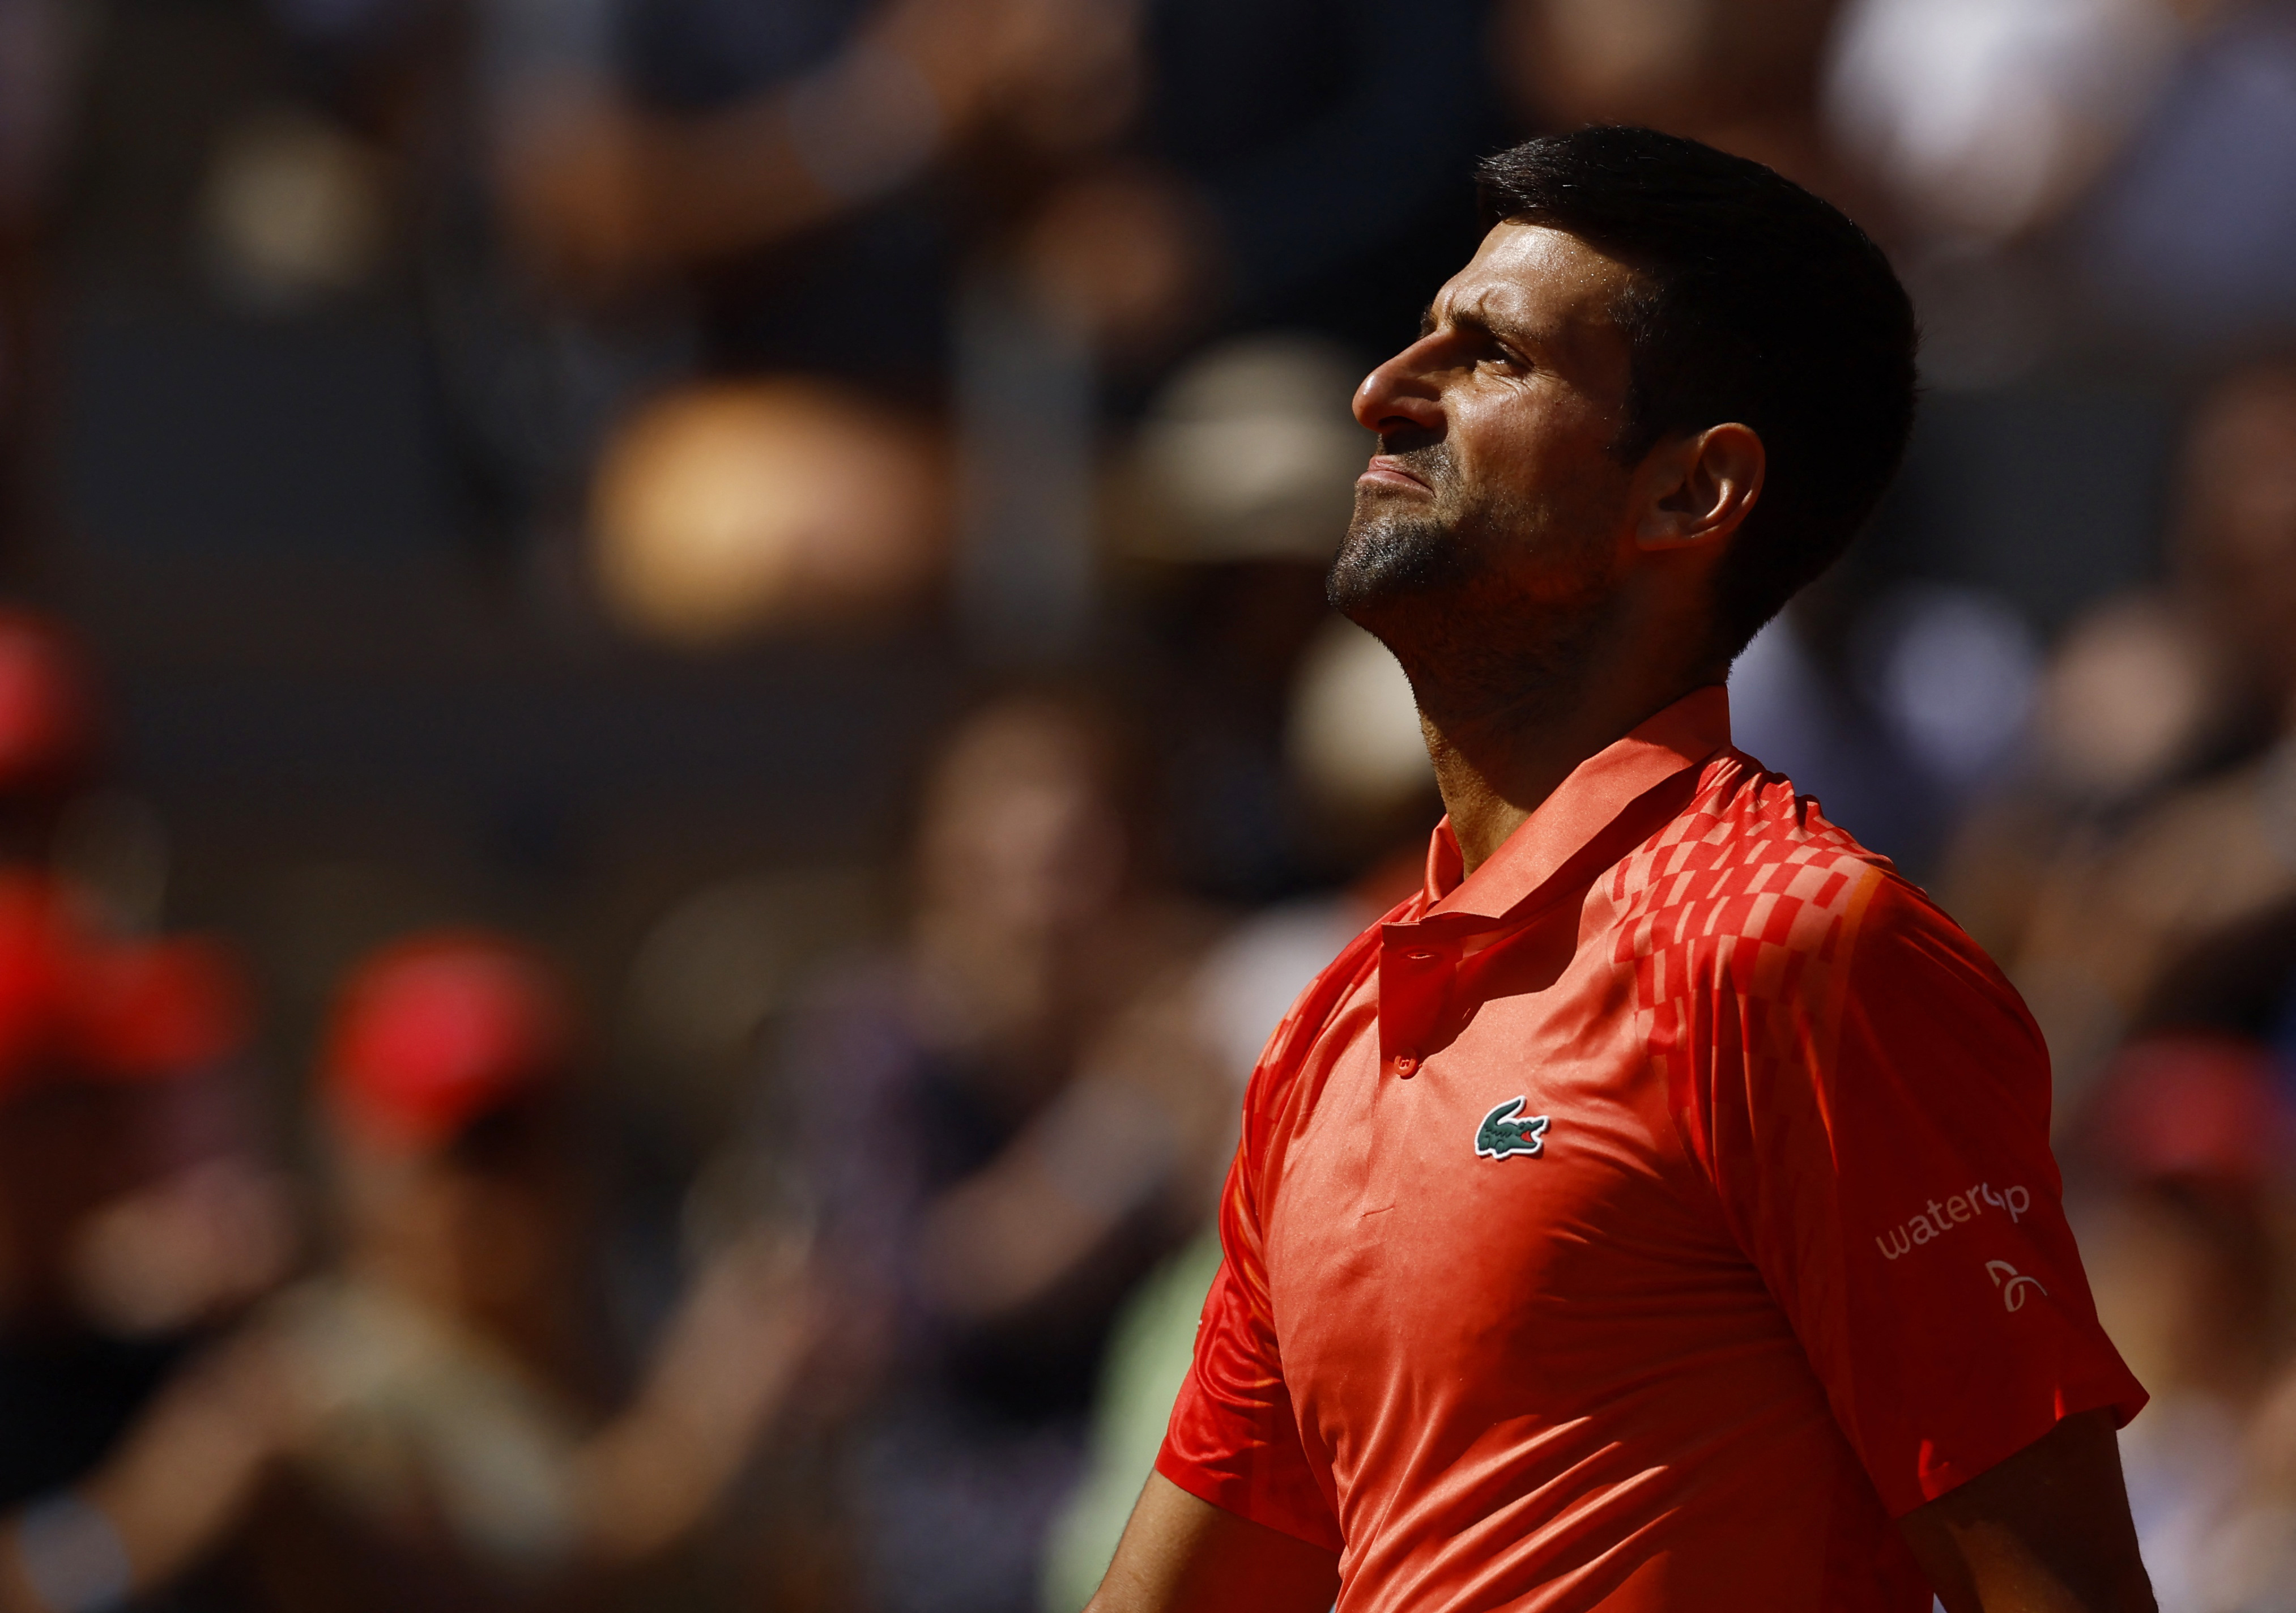 Expulsion, amende, pénalité : que risque Novak Djokovic après son geste  politique sur la crise au Kosovo durant Roland-Garros ?